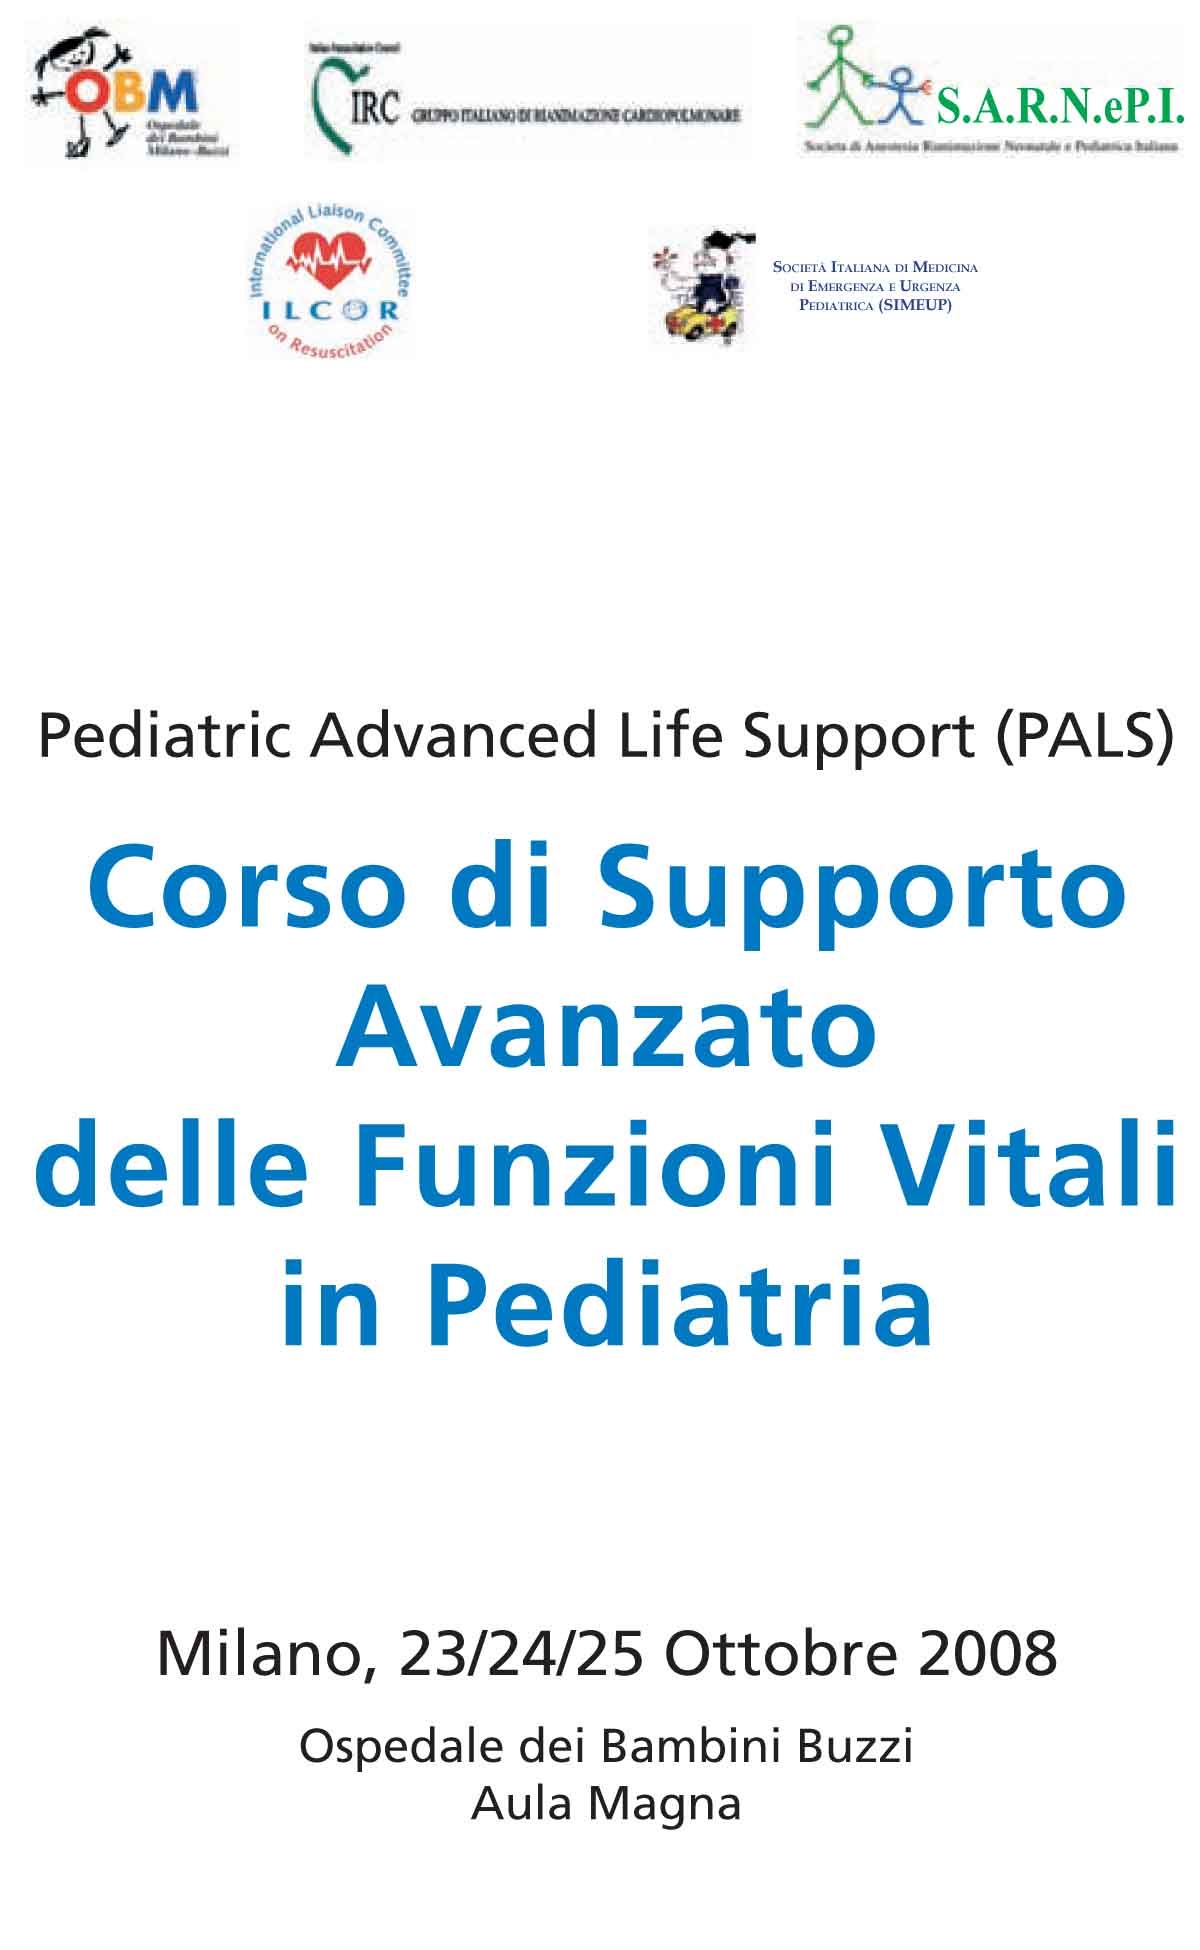 Pediatric Advanced Life Support "Pals" Corso di Supporto Avanzato delle funzioni Vitali in Pediatria